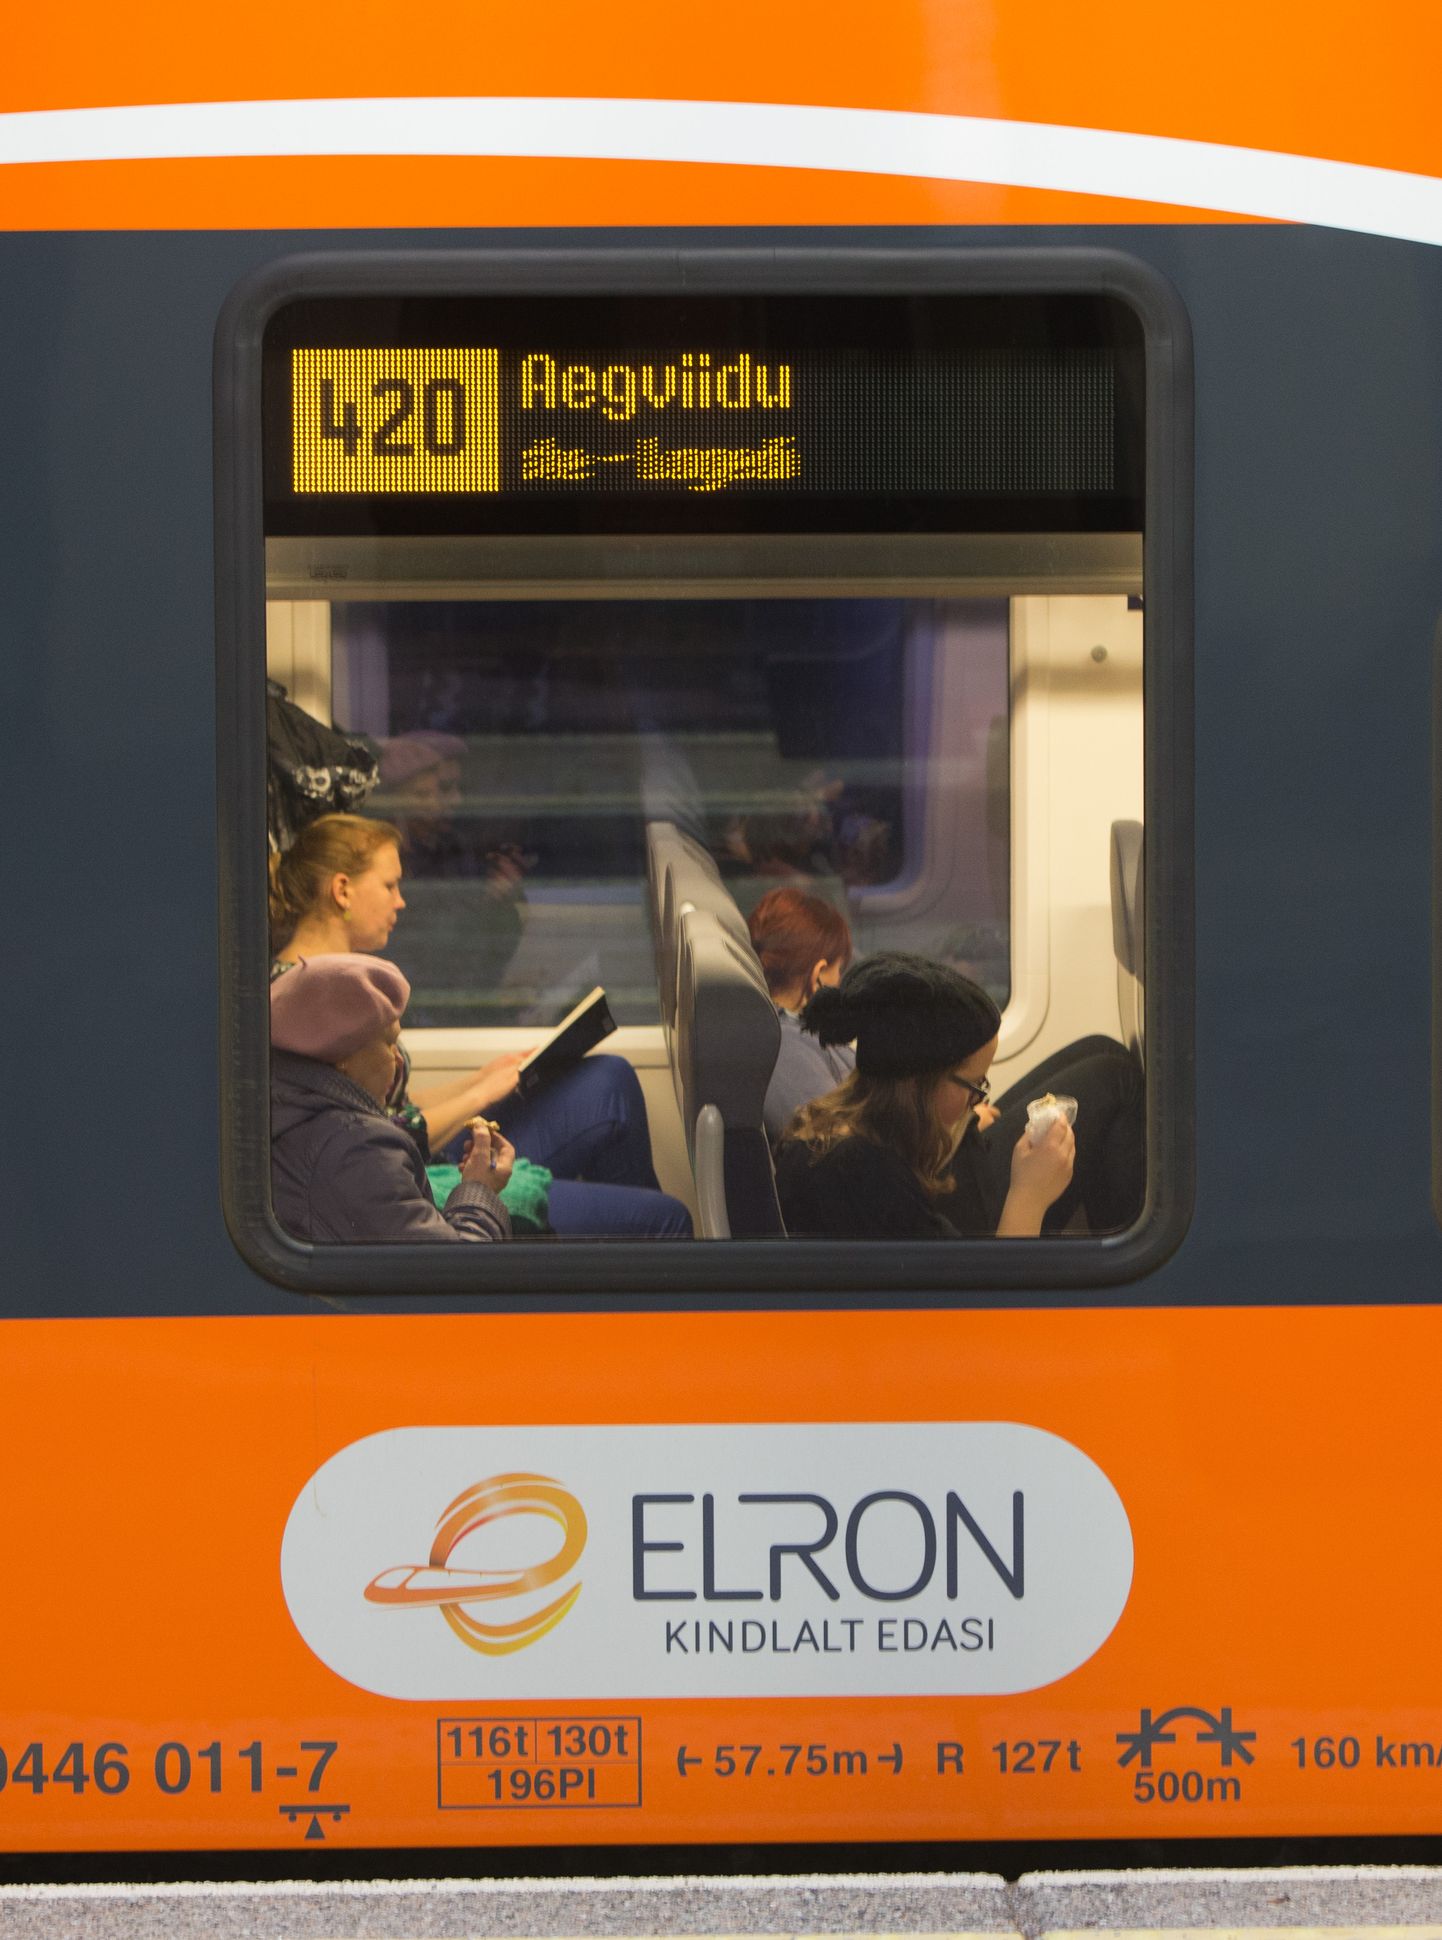 Elroni rongis märgati piilurit, kes end kaassõitjate silme all rahuldas.